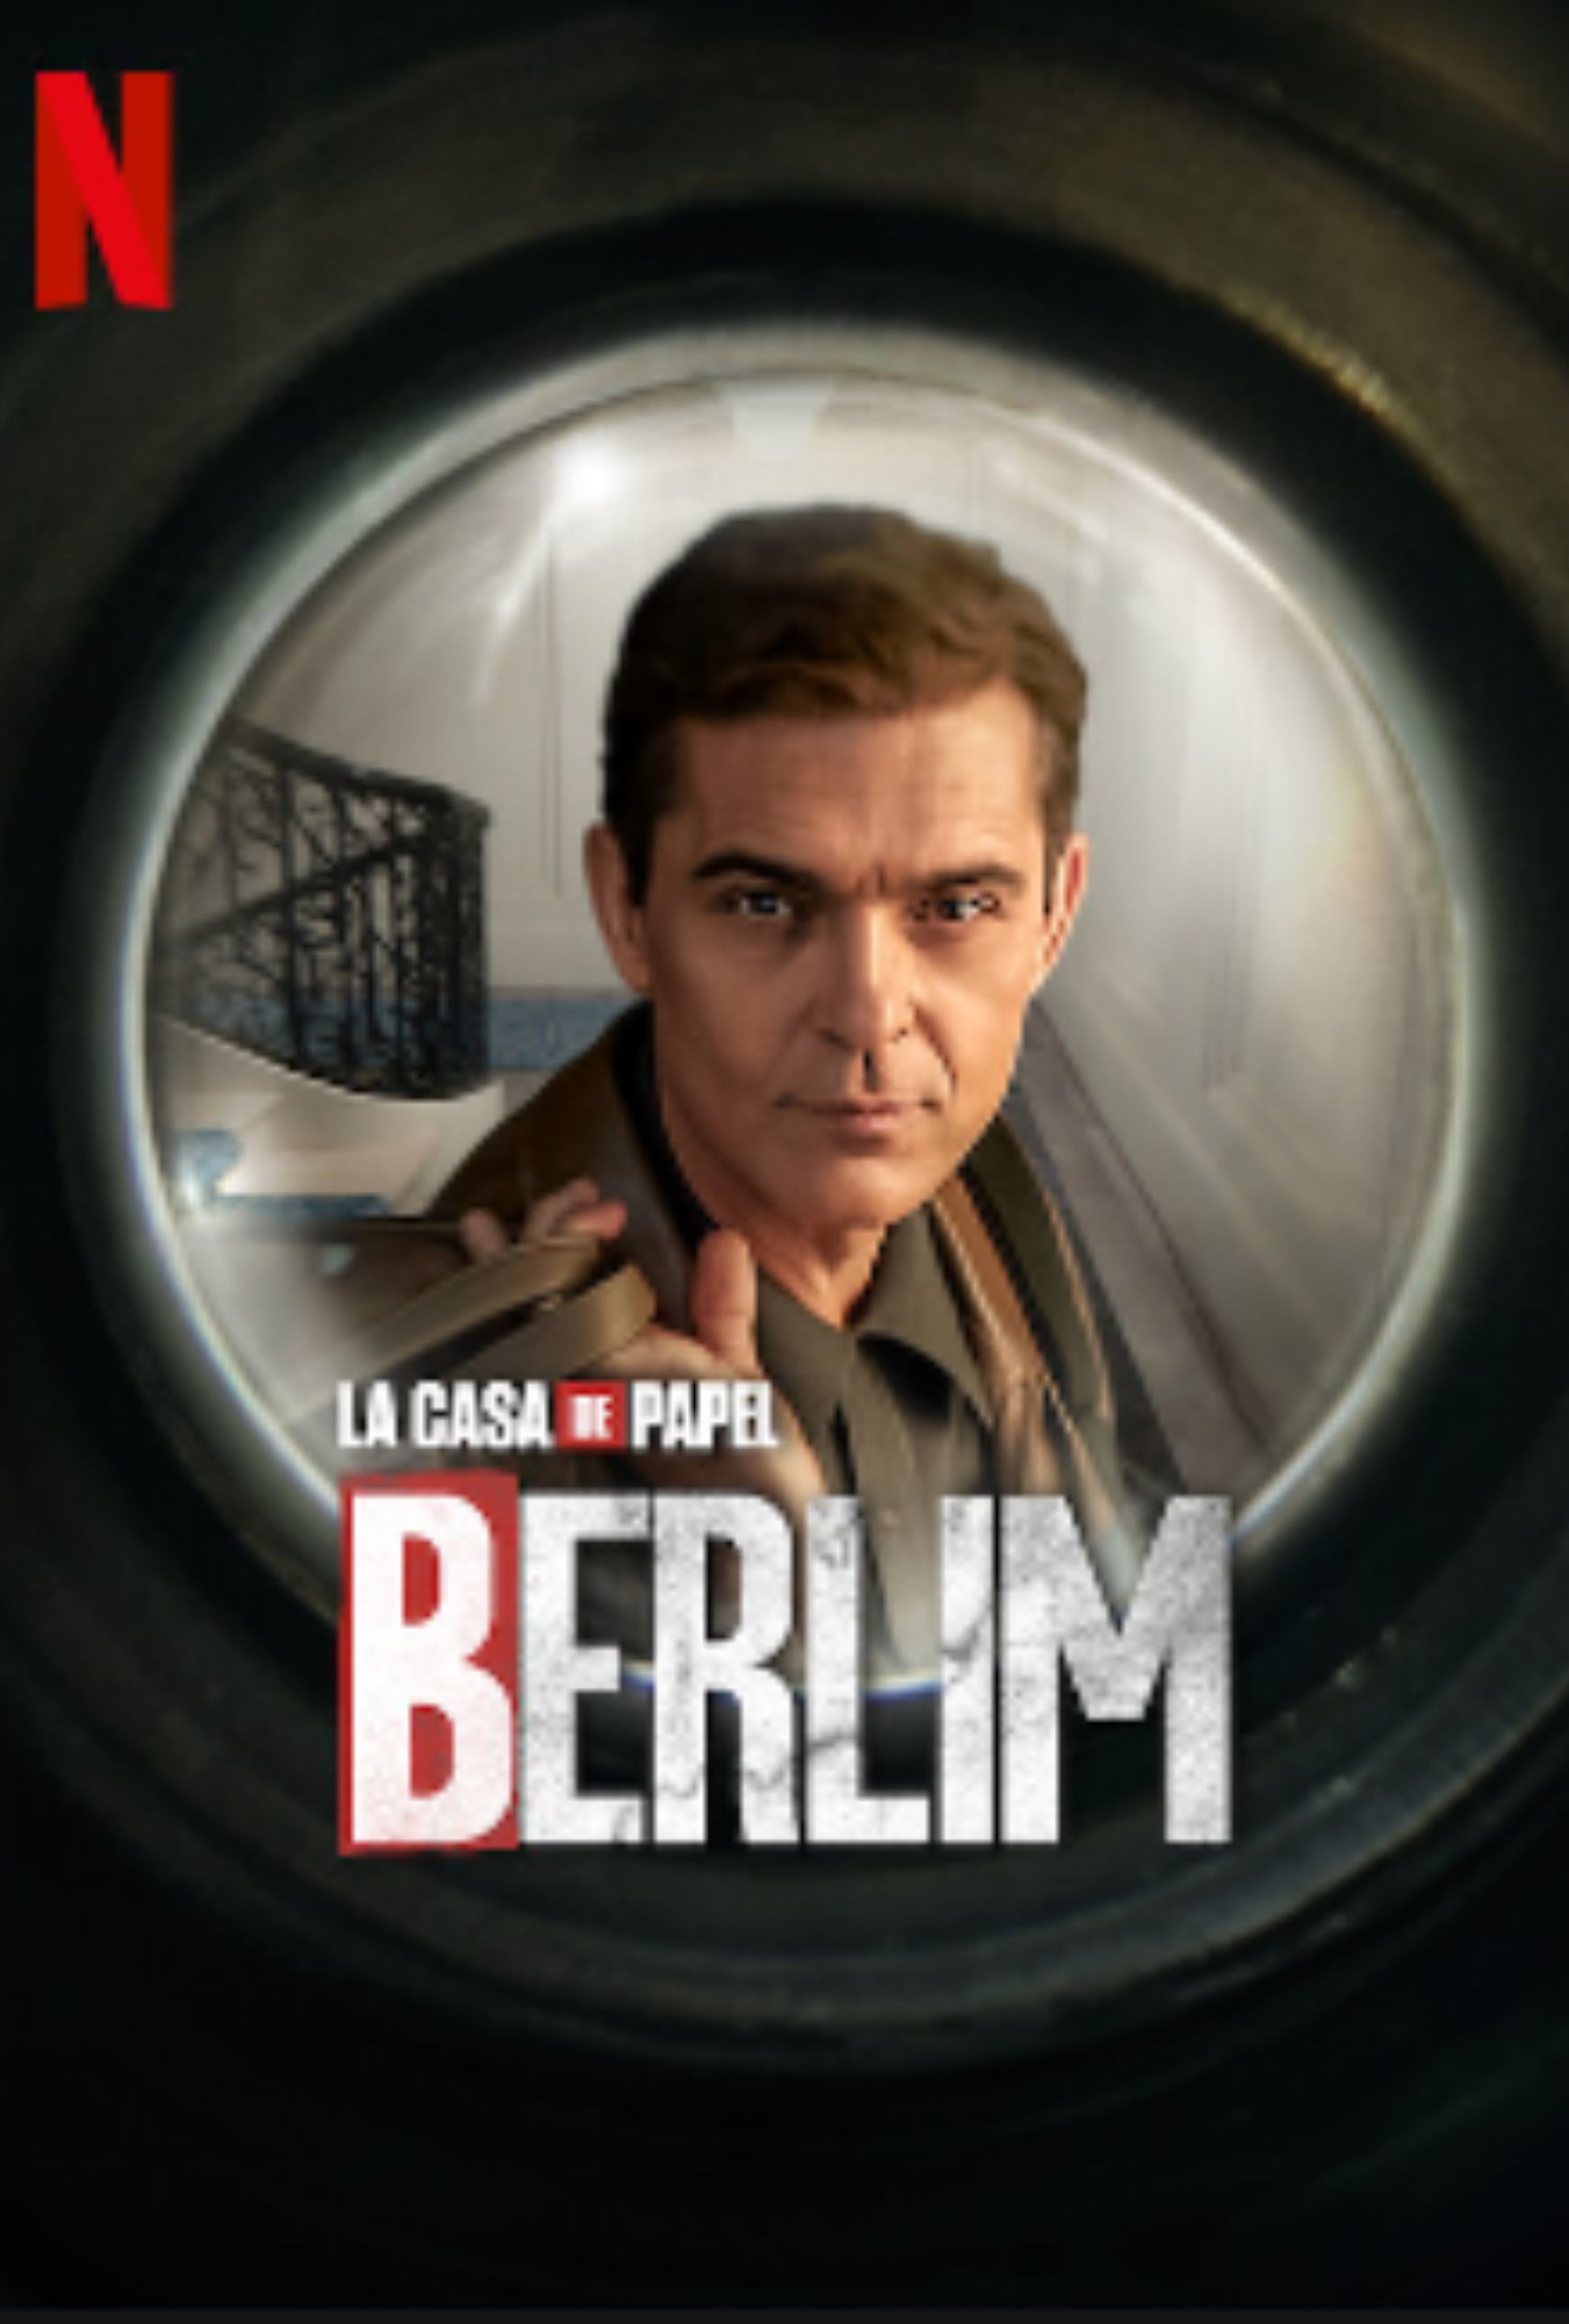 BERLIM, Anúncio da estreia